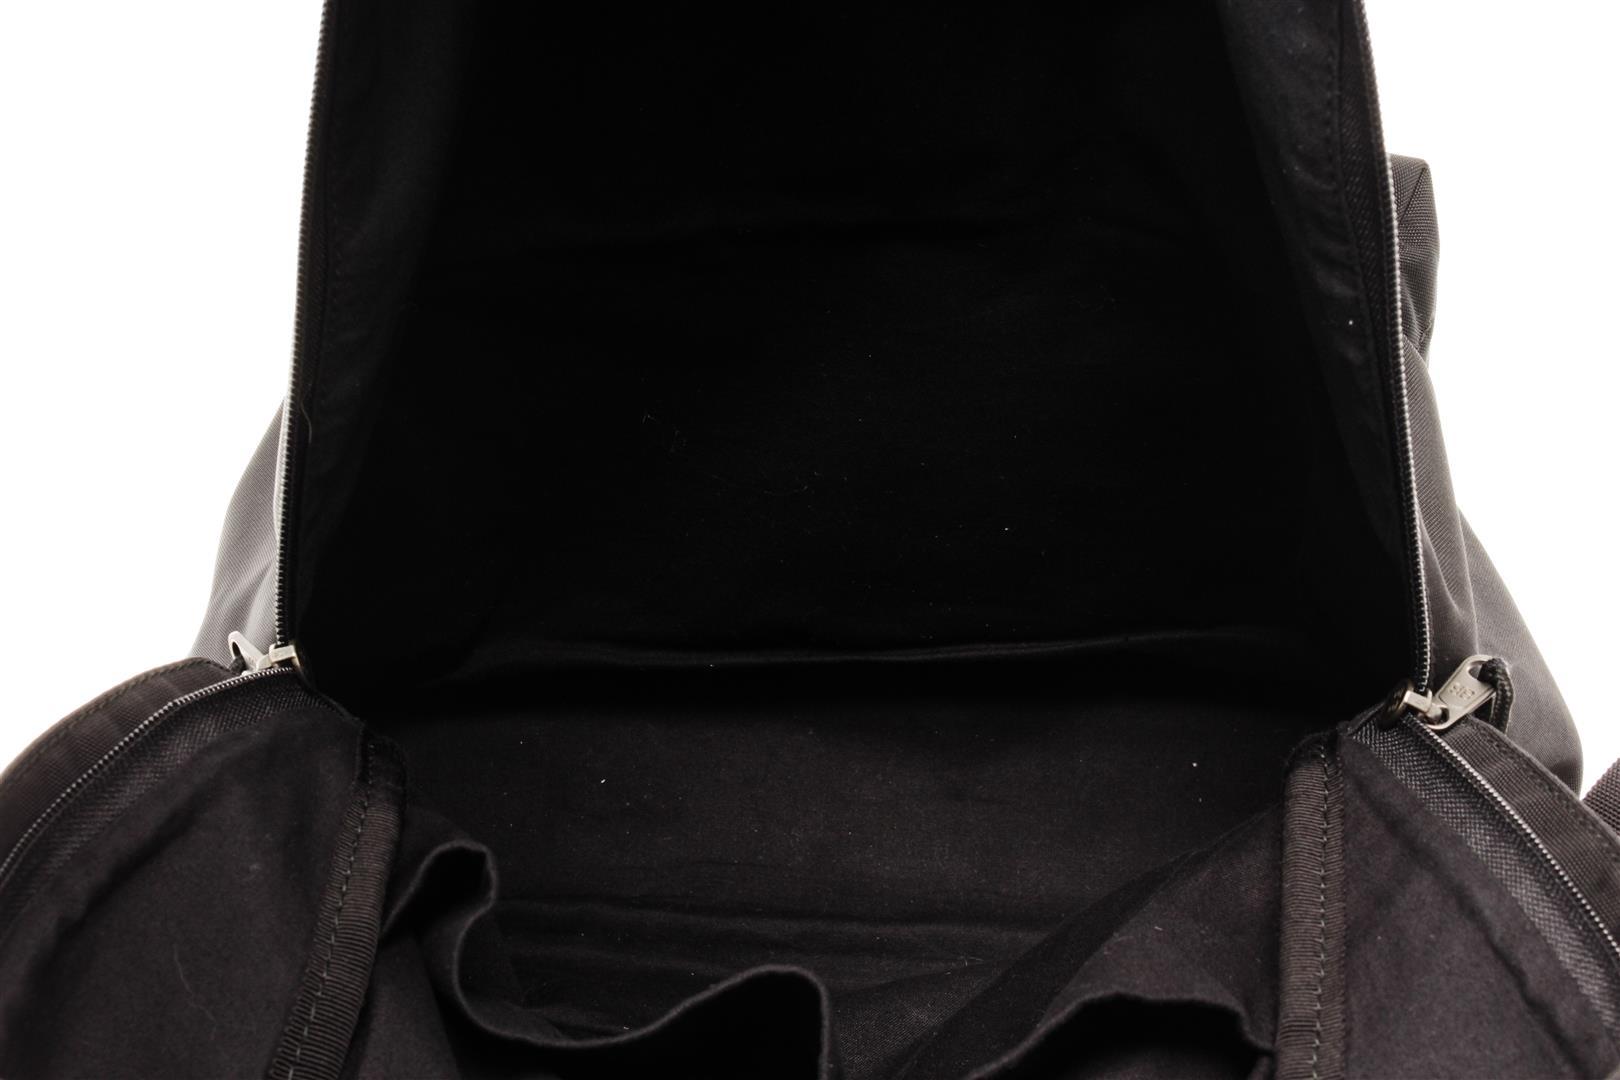 Balenciaga Black Canvas Explorer Backpack